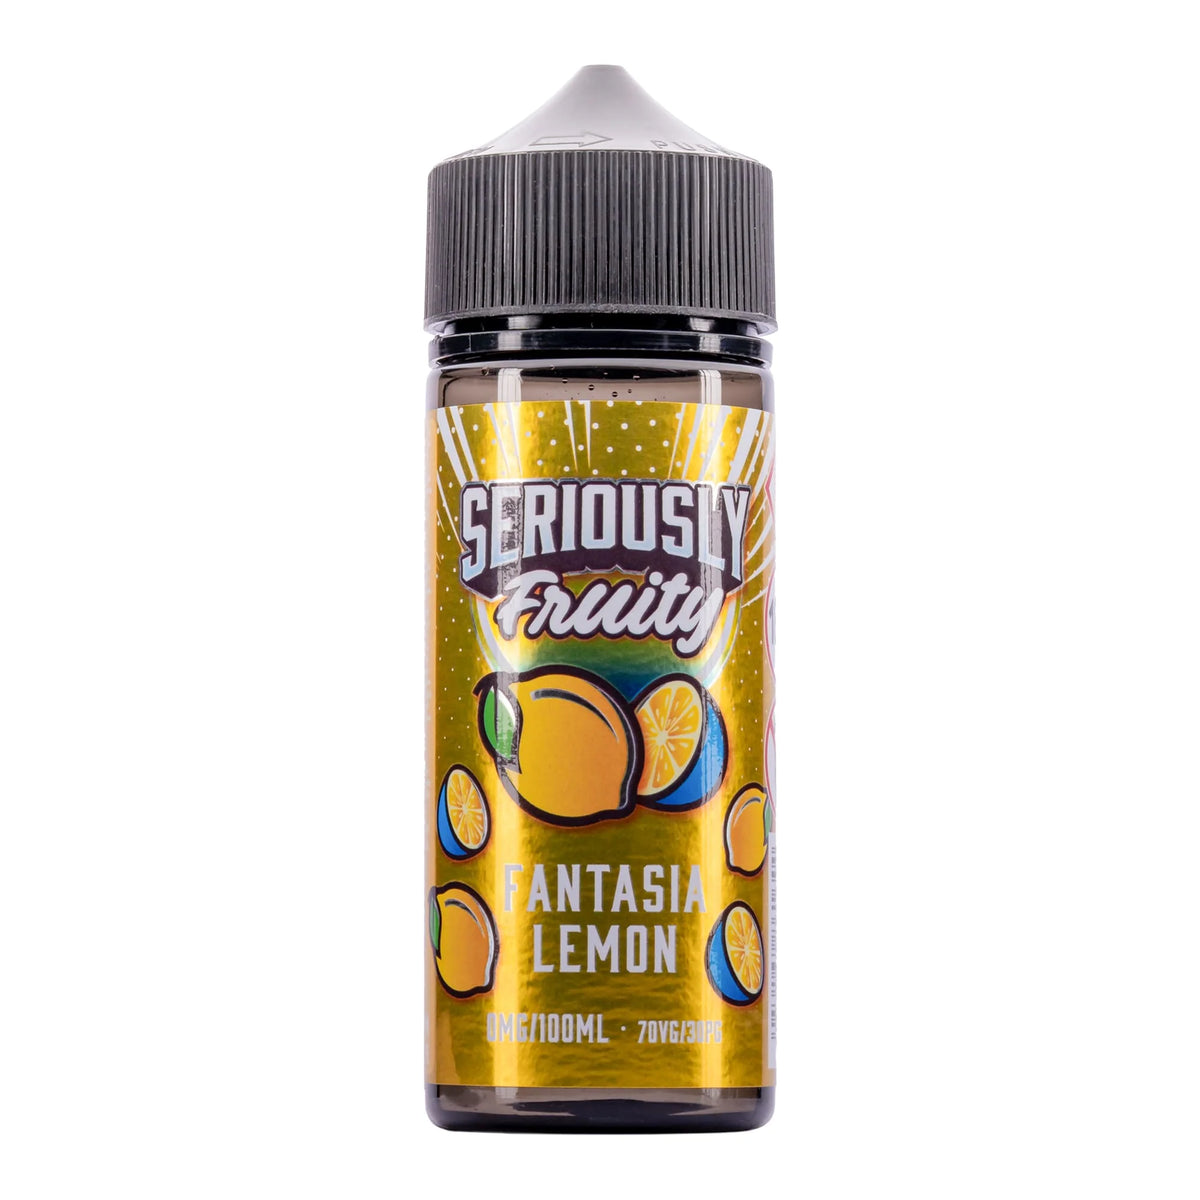 Seriously - Fantasia Lemon 100ml